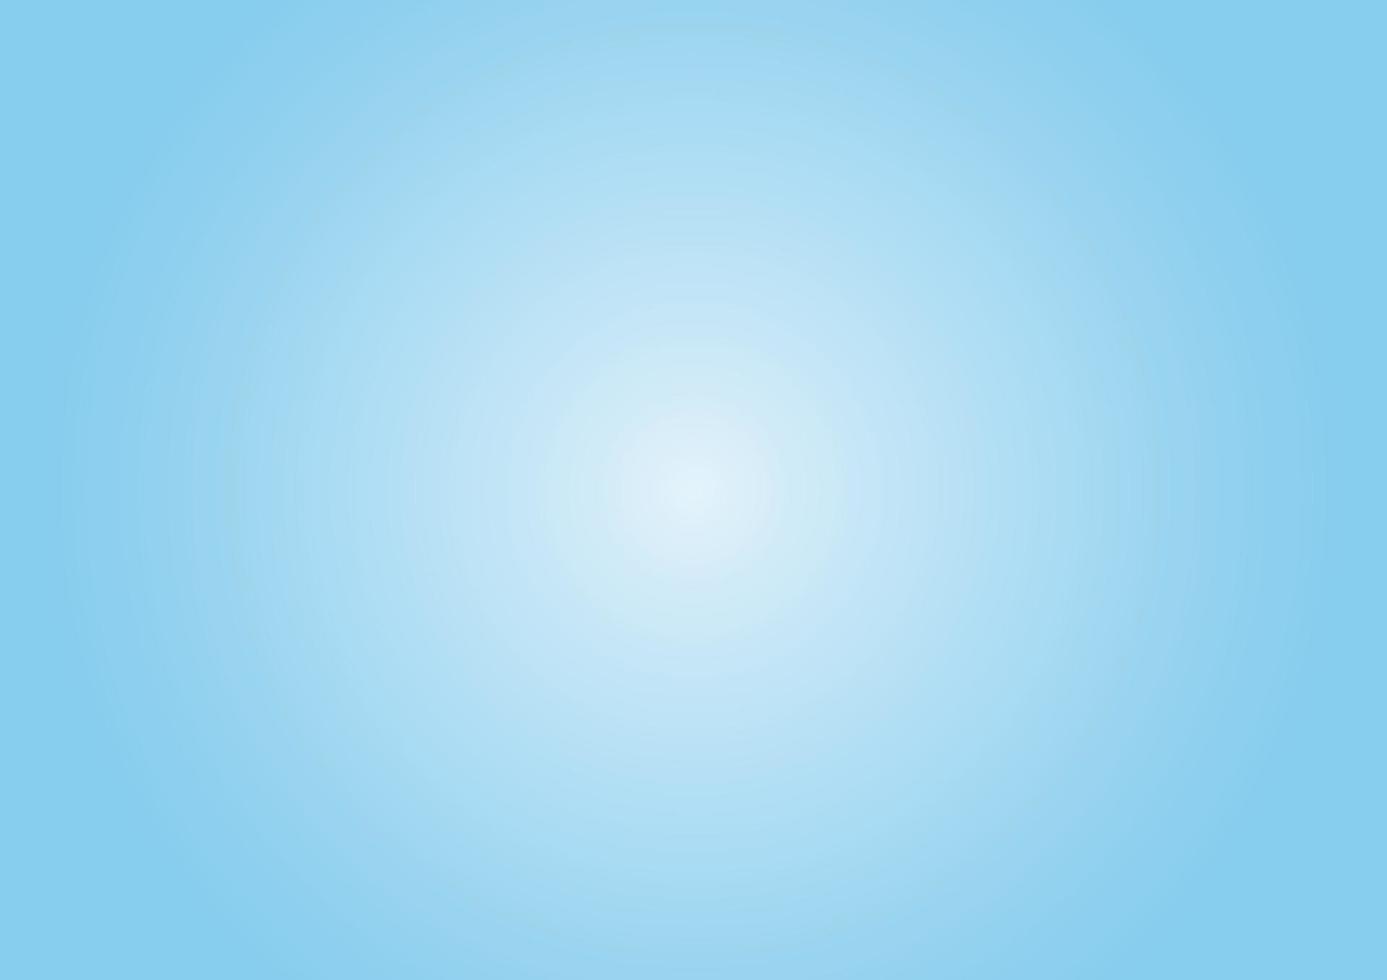 fondo degradado azul cielo. papel tapiz suave, liso, azul claro y blanco radial liso. diseño de ilustración vectorial eps 10. vector